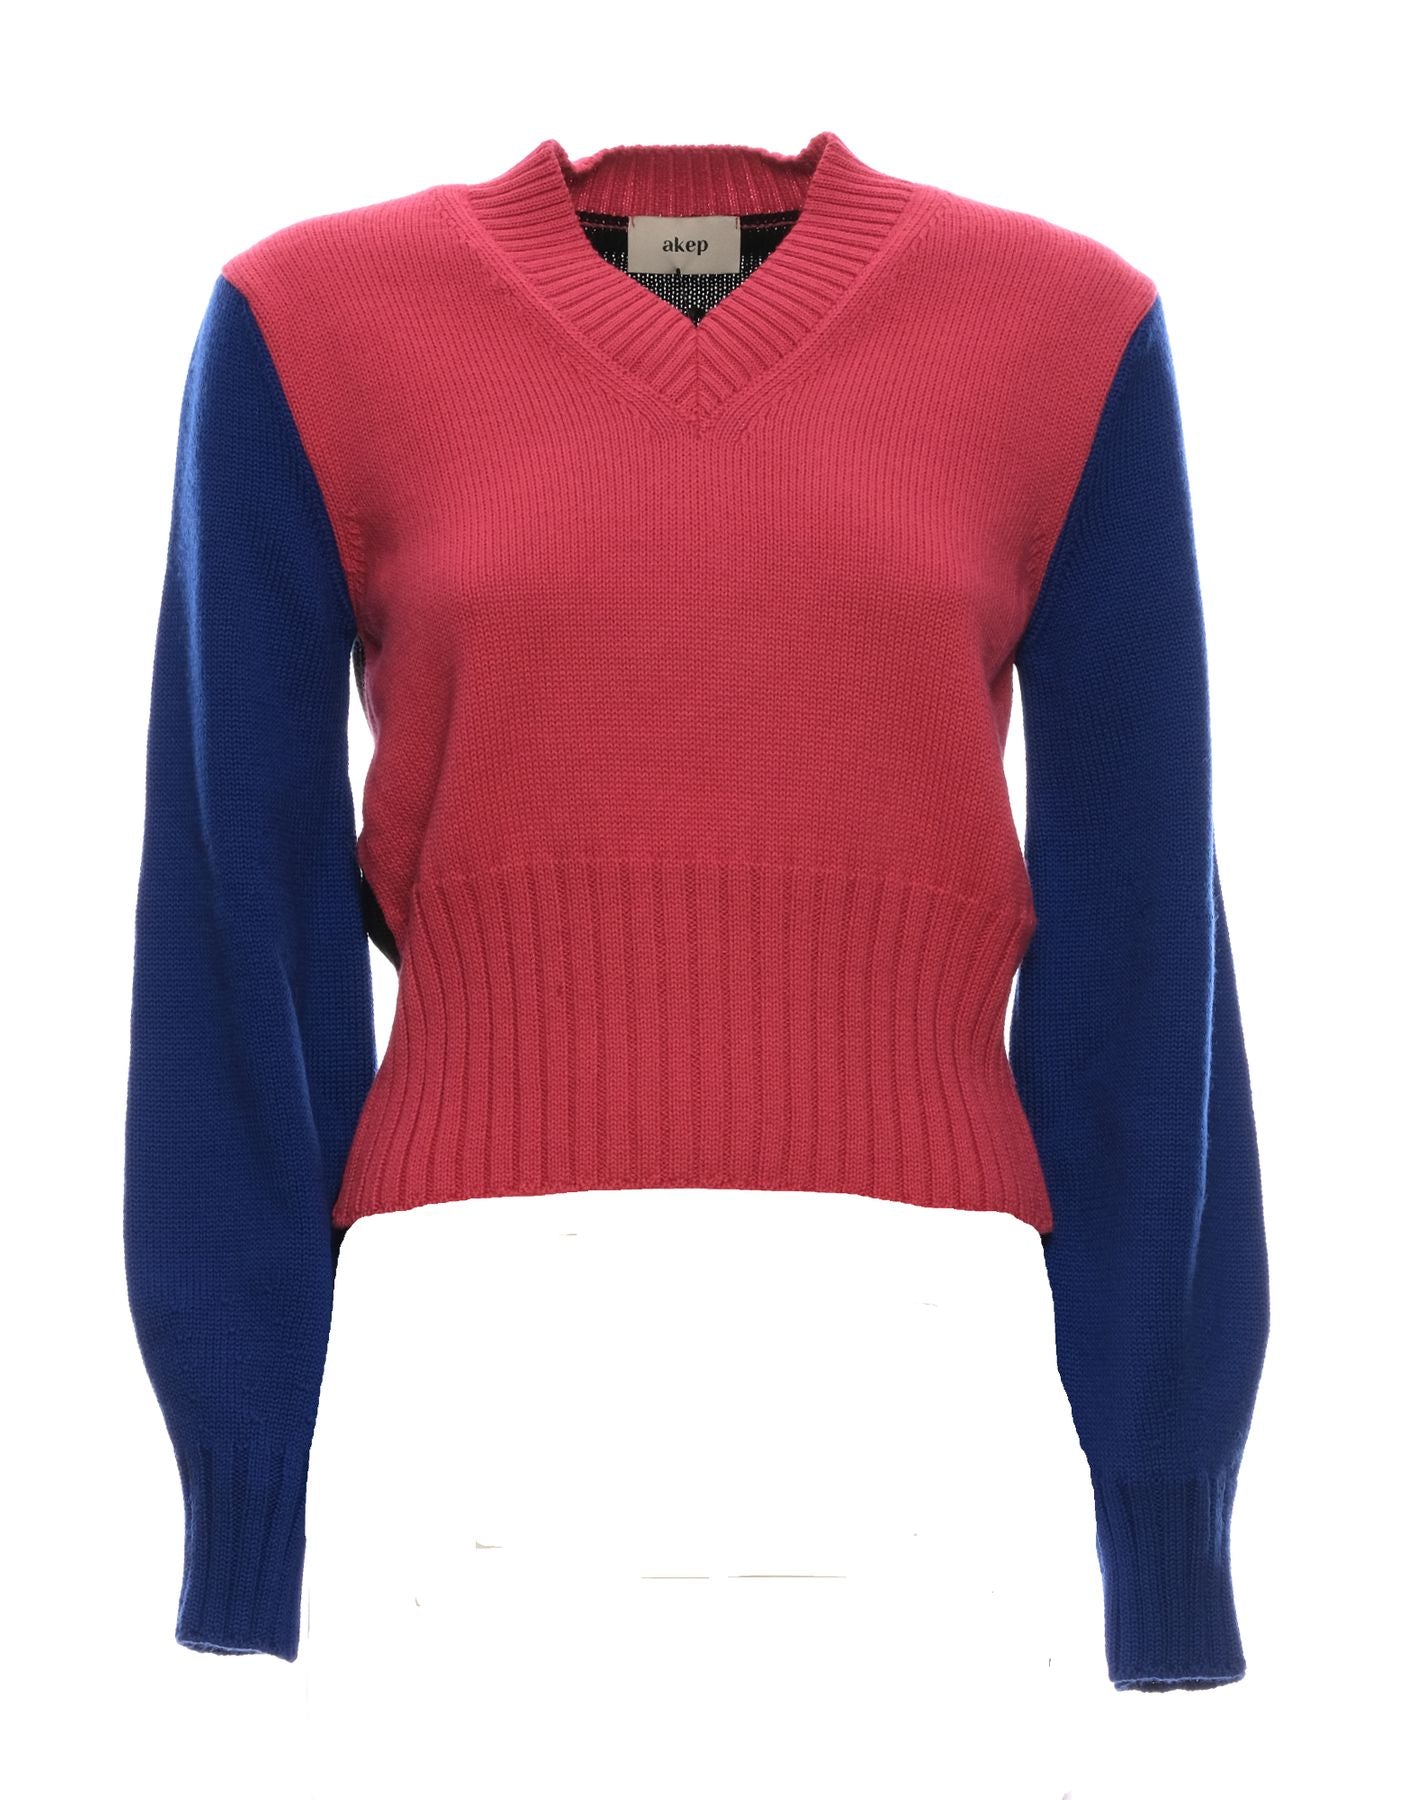 Pullover für Frauen AKEP K11039 Variante 1